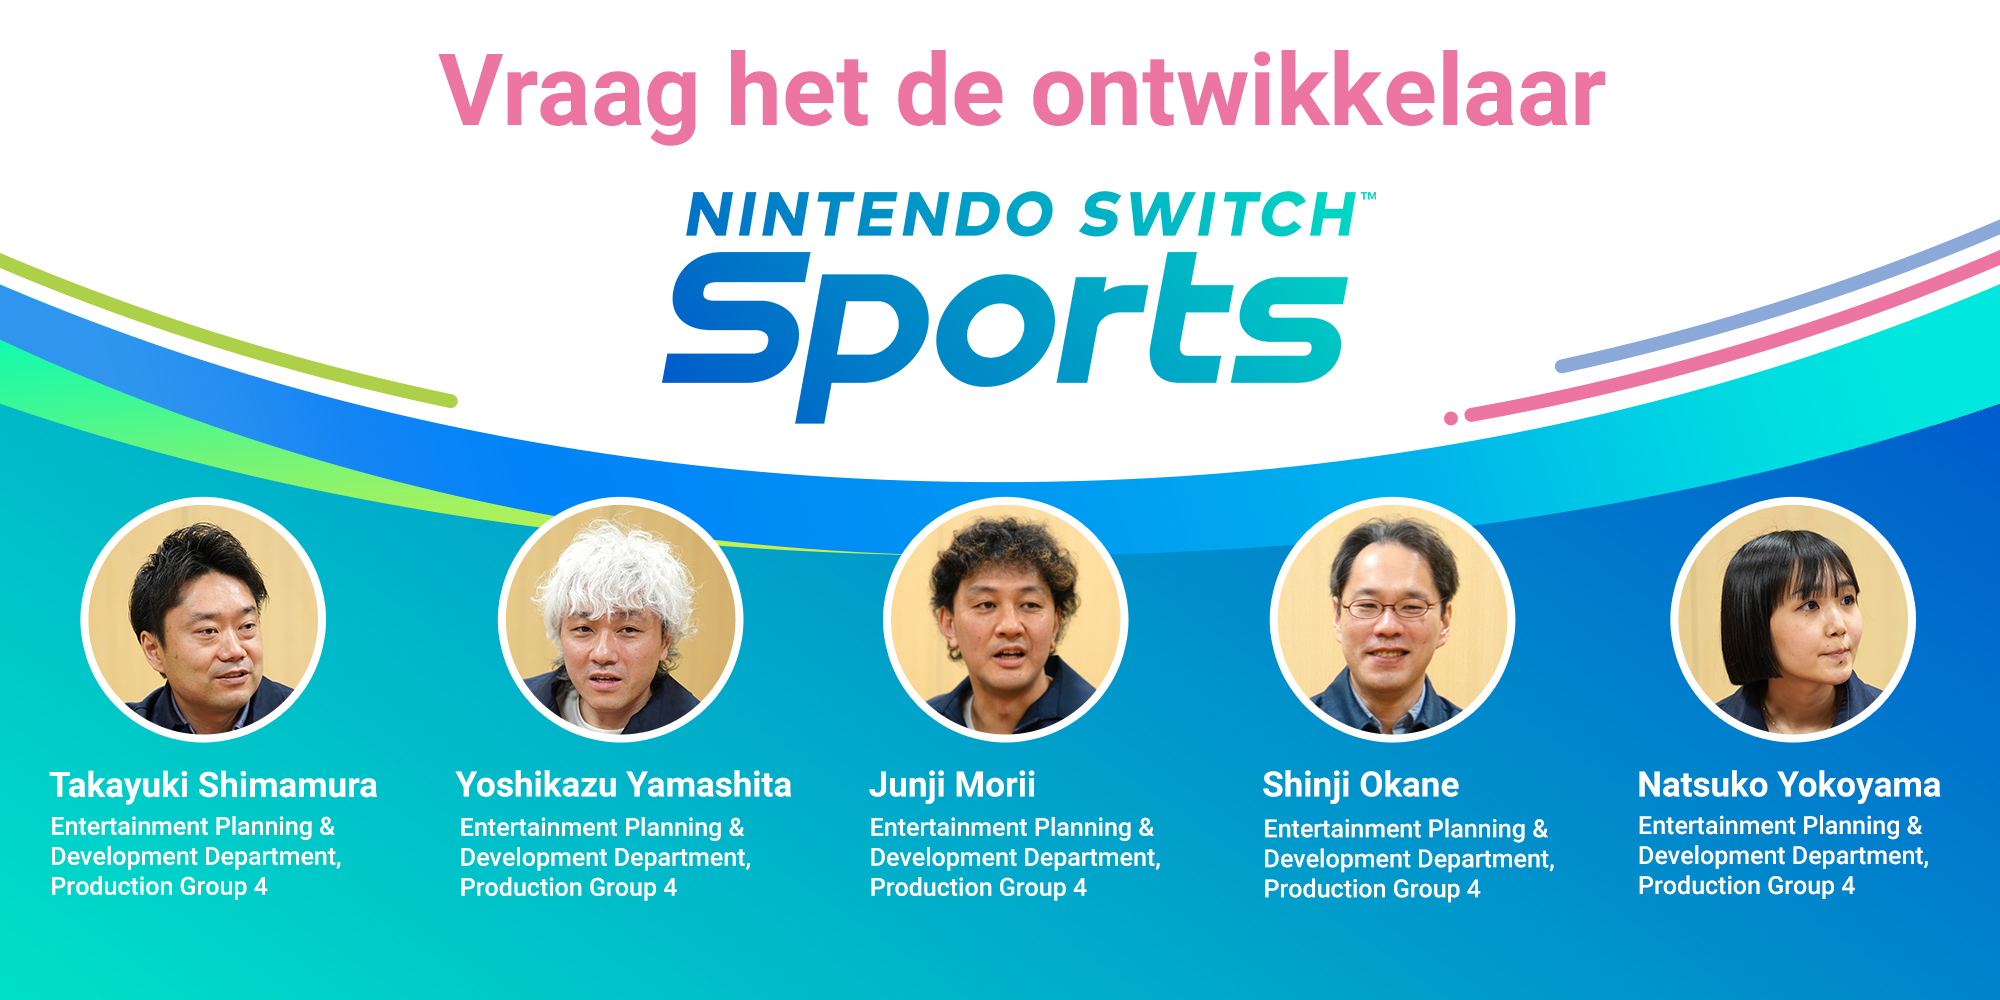 Vraag het de ontwikkelaar Vol. 5, Nintendo Switch Sports